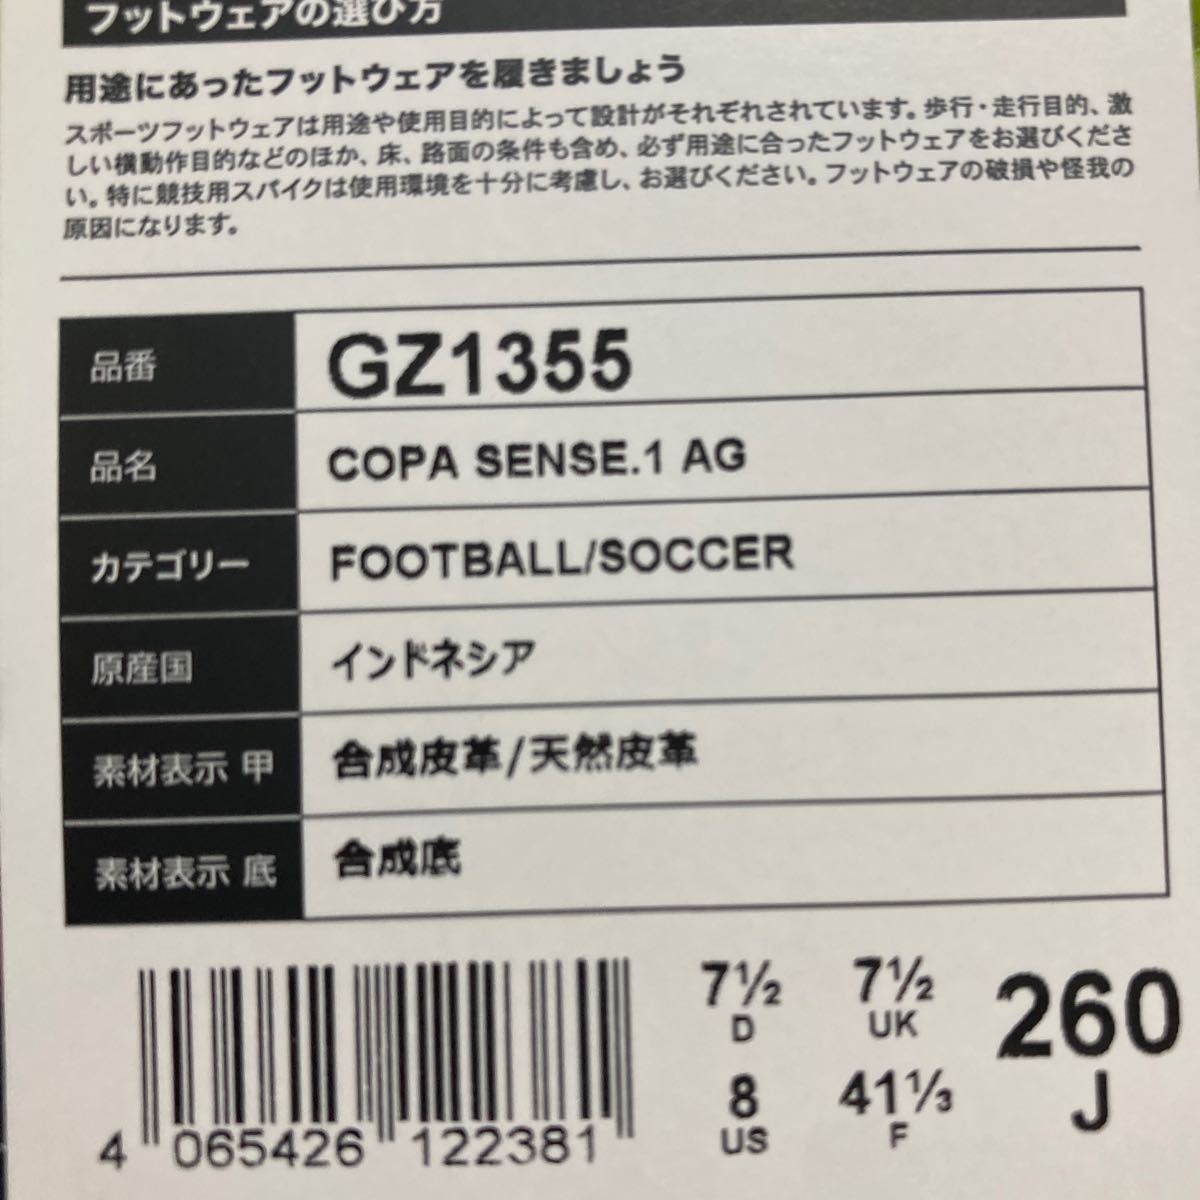 新品 アディダス コパセンス.1 AG 26cm GZ1355 25300円 AL RIHLA(アル・リフラ) PACK_画像3